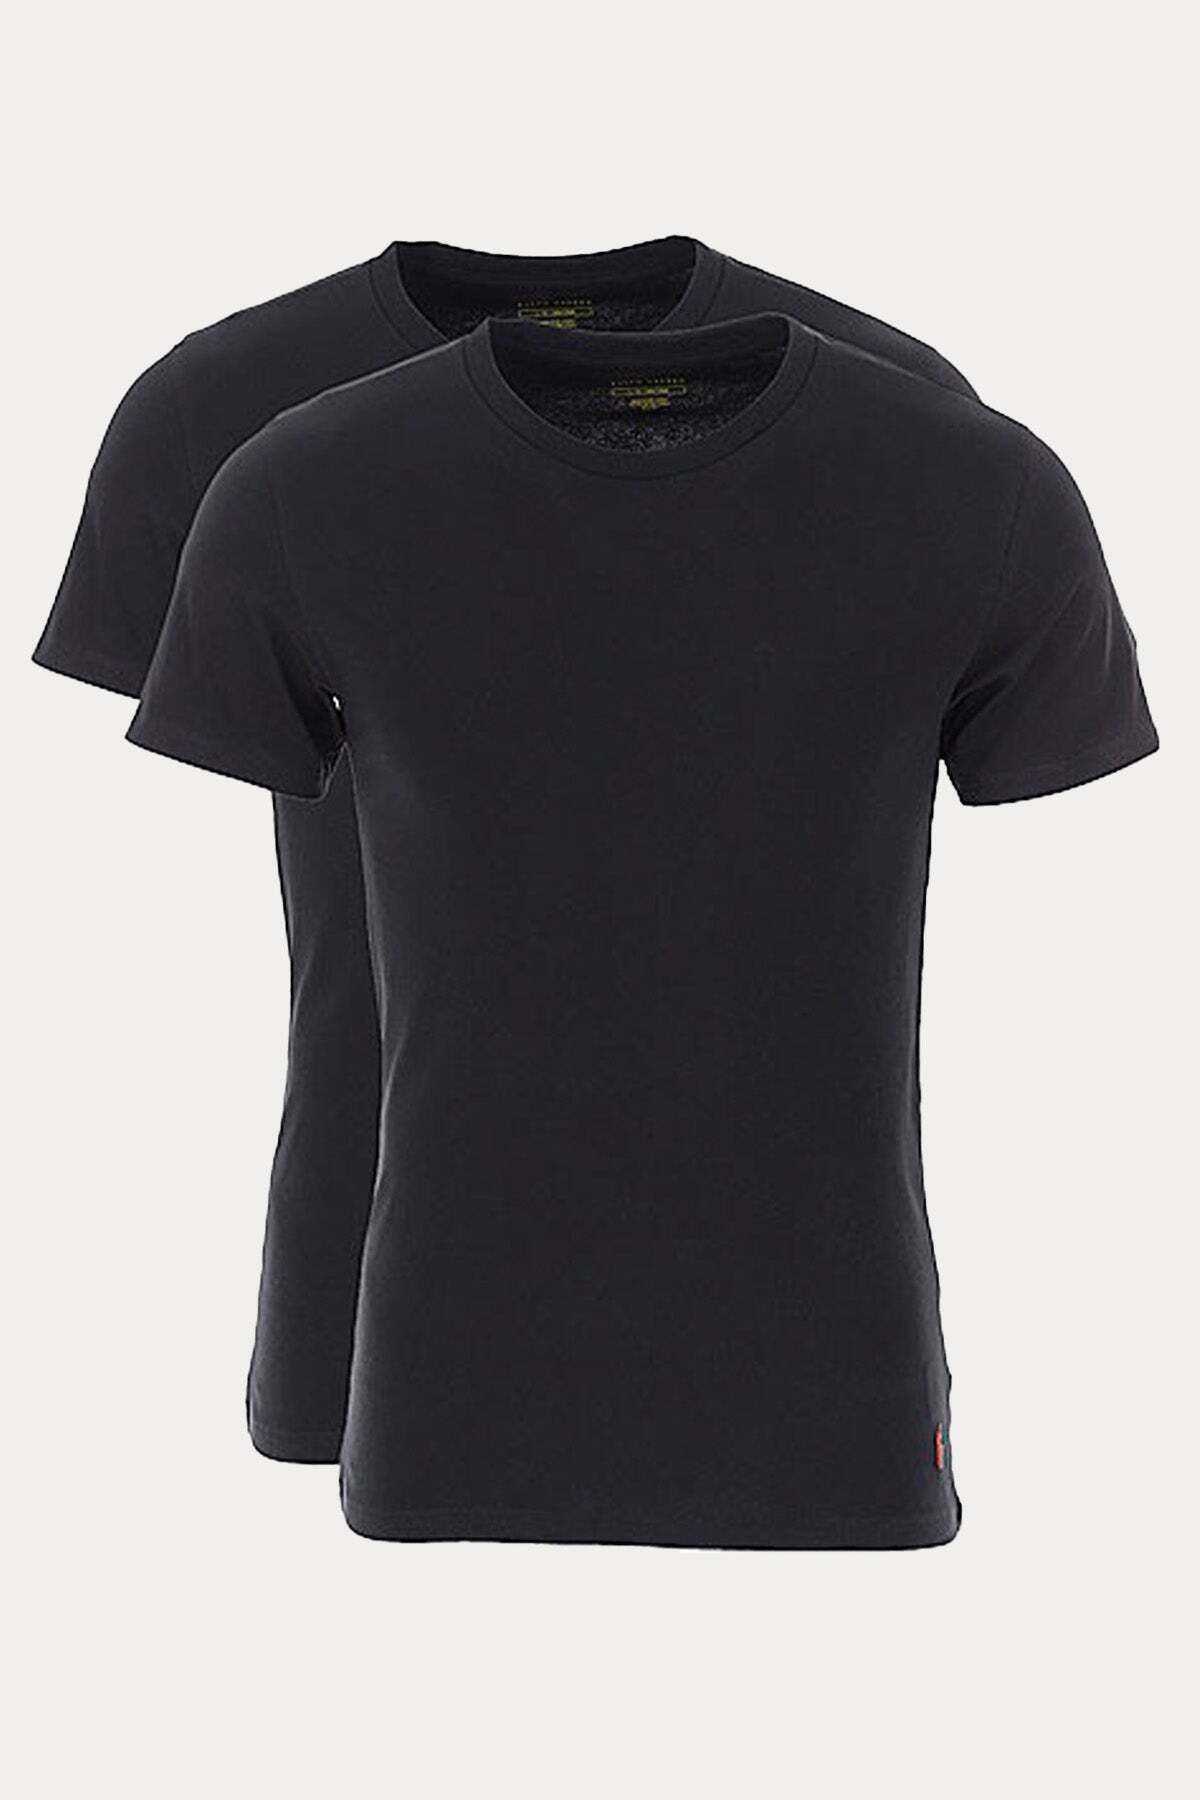 Ralph Lauren 2'li Paket Yuvarlak Yaka Streç T-shirt Set